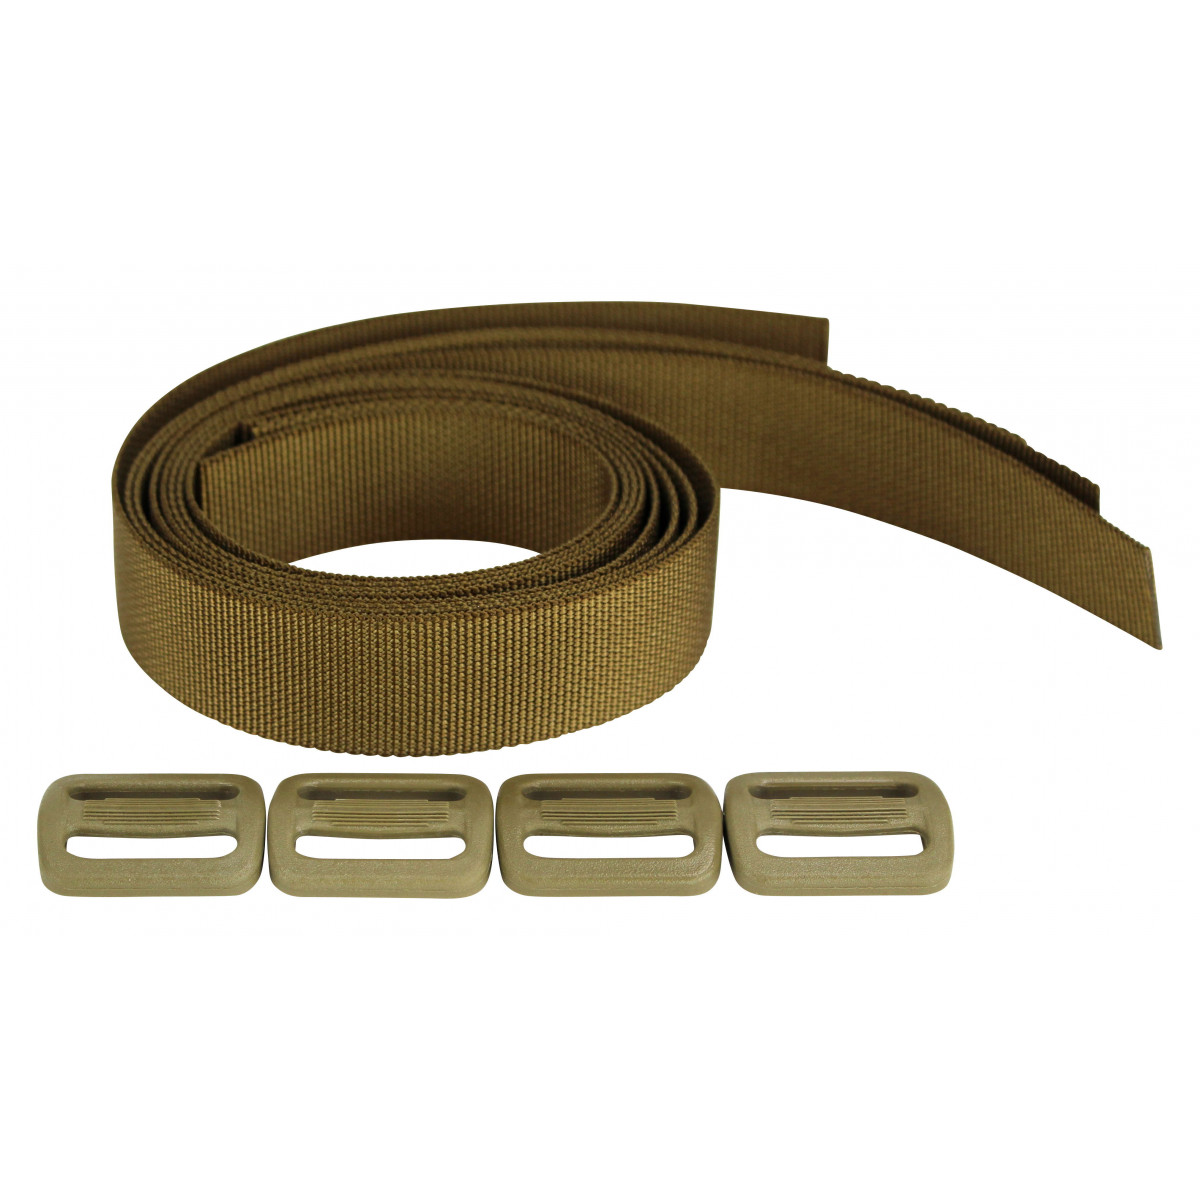 Gurt Kit für das Tragesystem Schulter Harness. Gurte sind zur Befestigung an Battle-Belts wie dem Gefechtsgurt und Dienstgurt. 